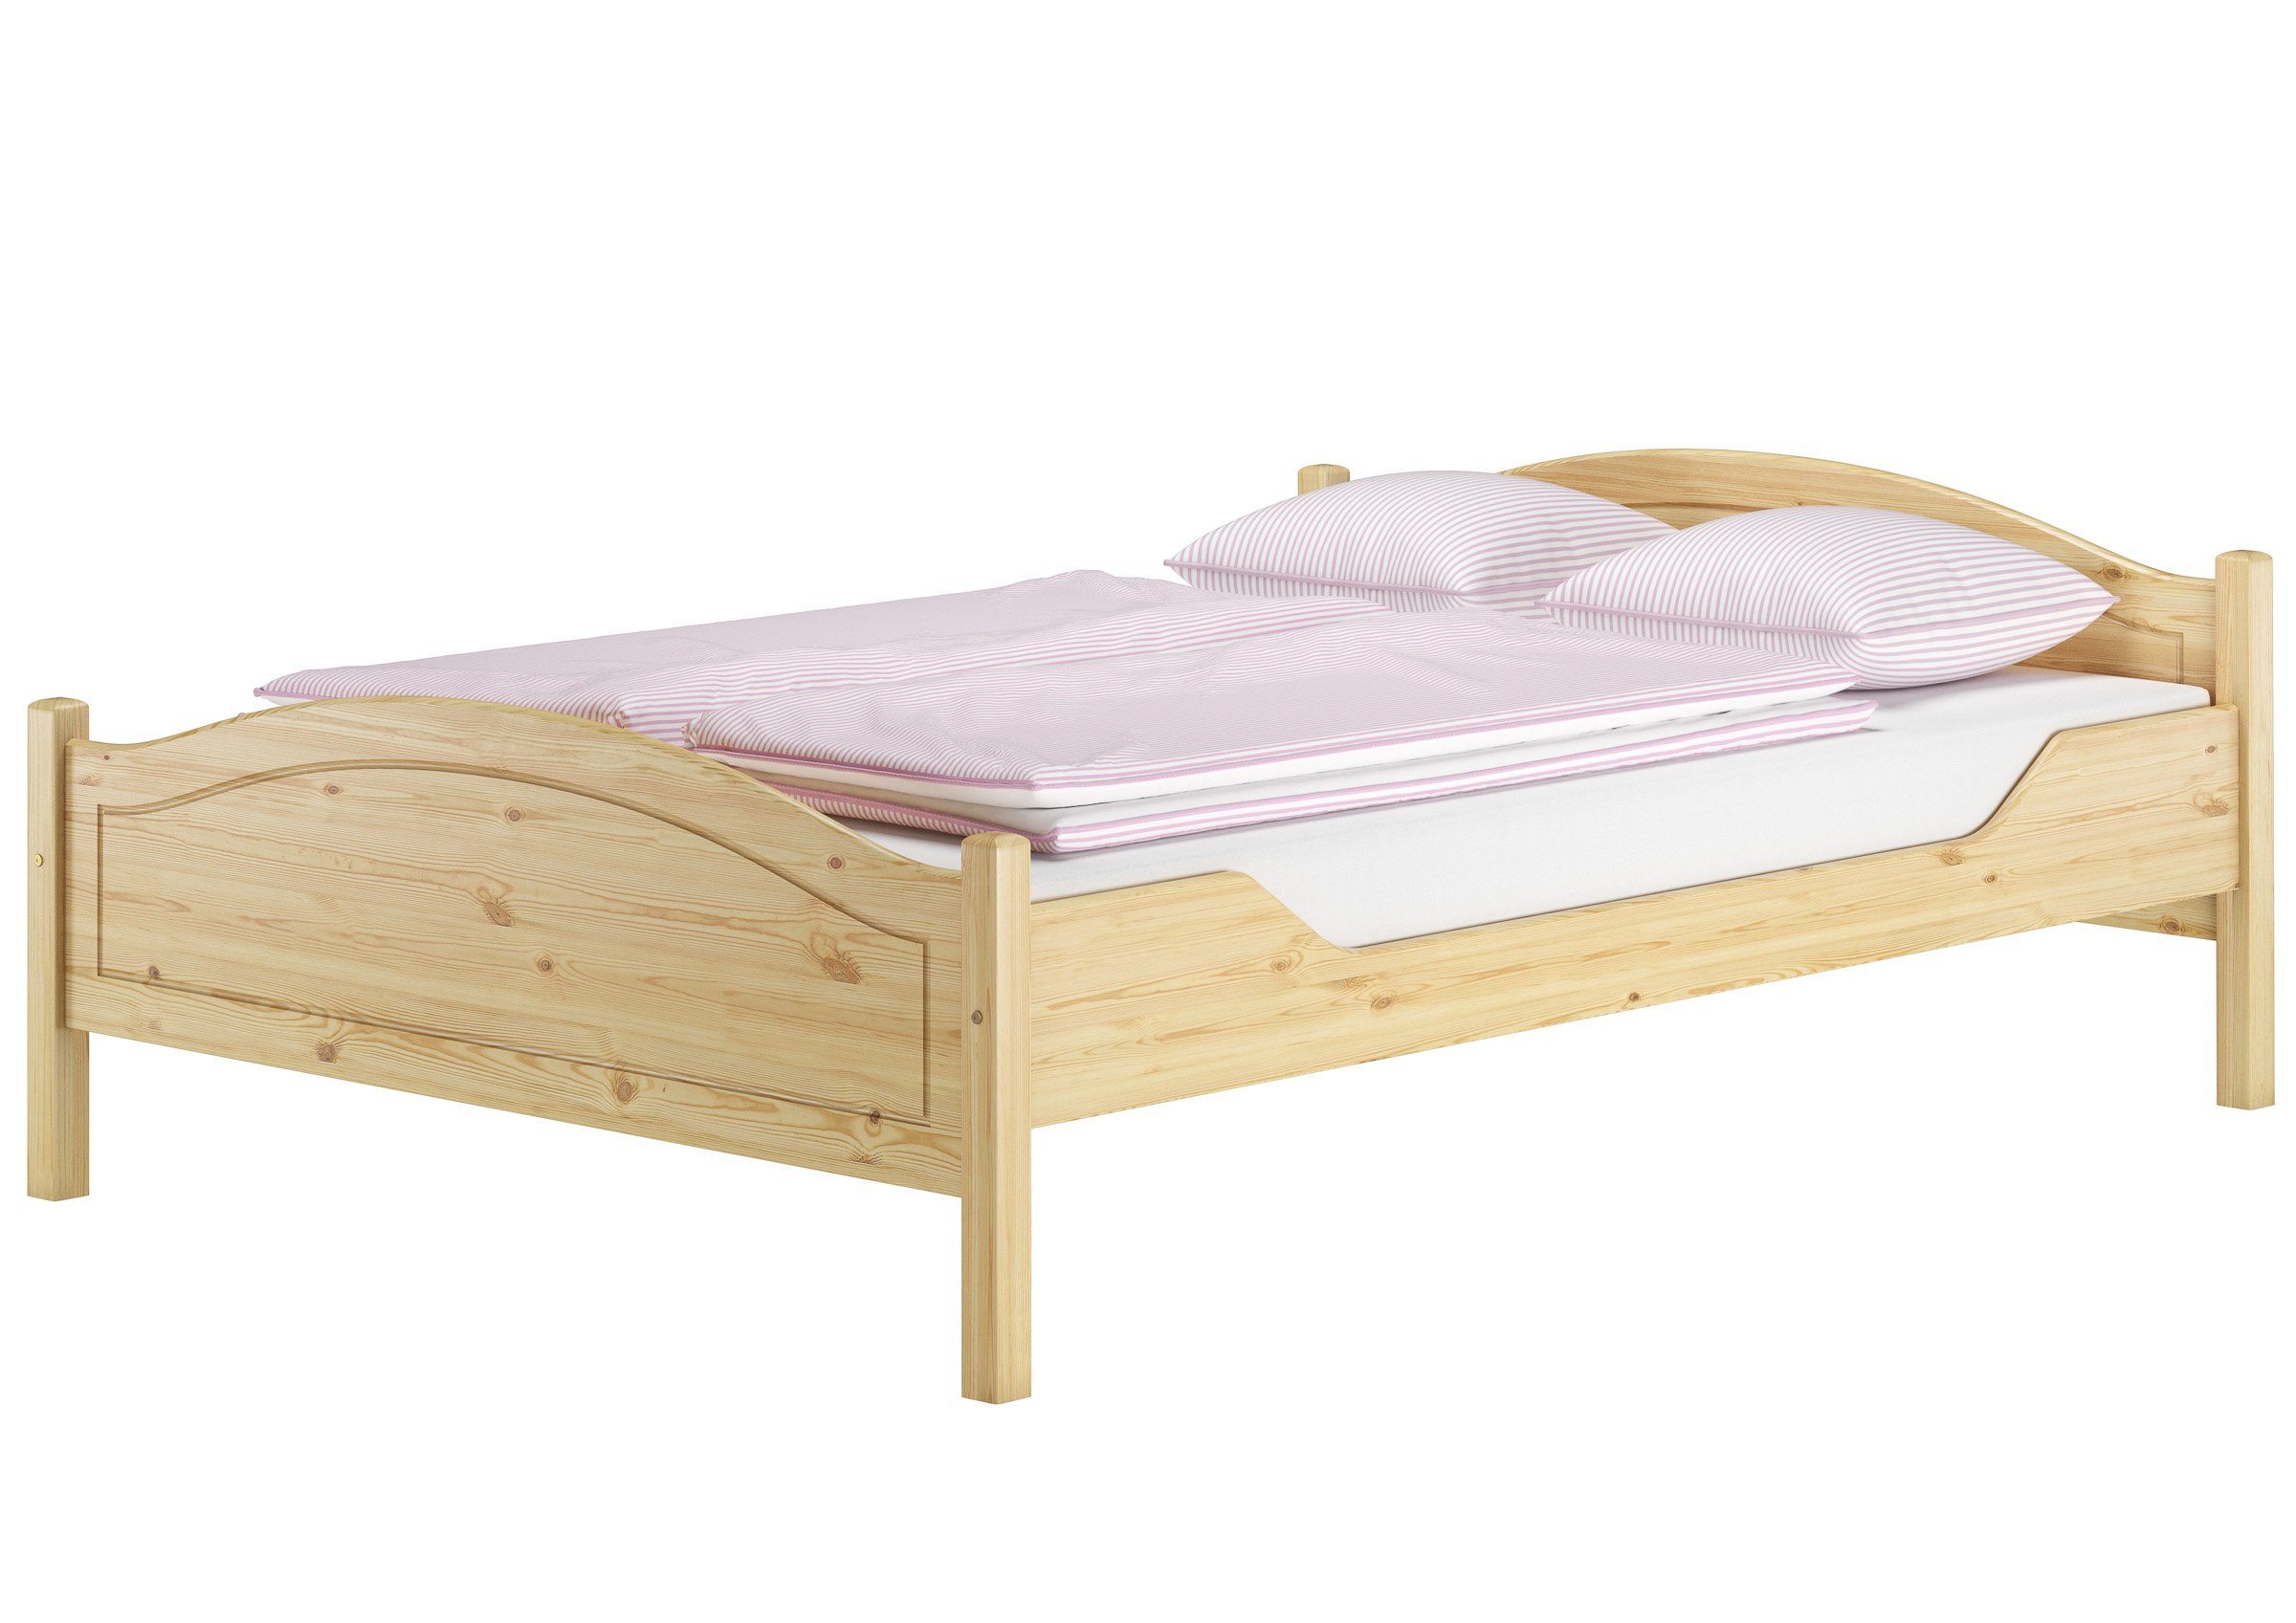 ERST-HOLZ Bett Überlanges Kieferholzbett massiv 140x220 Doppelbett Zubehör wählbar, Kieferfarblos lackiert